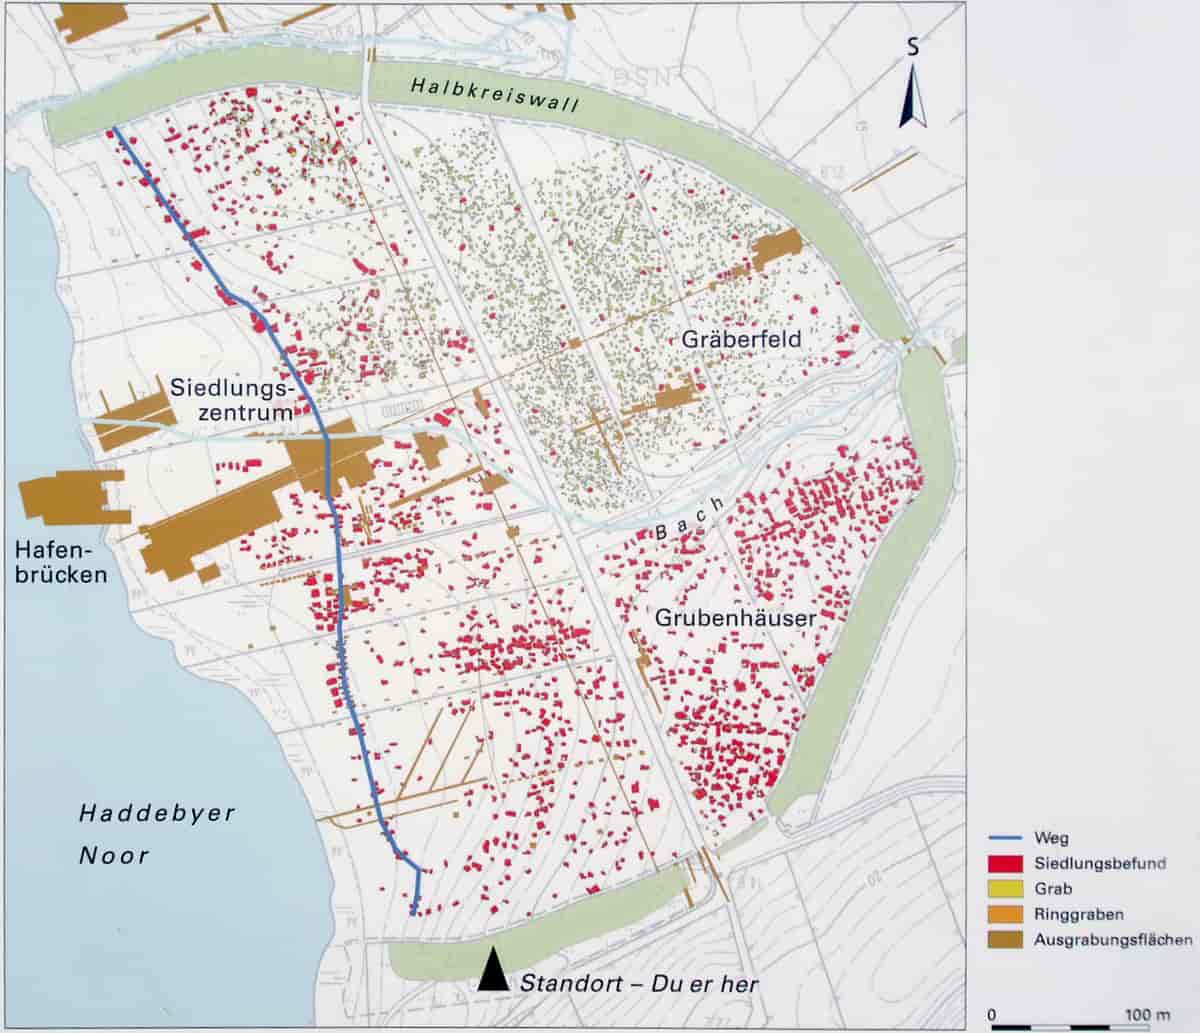 Oversiktskart som viser bebyggelsen og gravfelt innenfor halvkretsvollen.